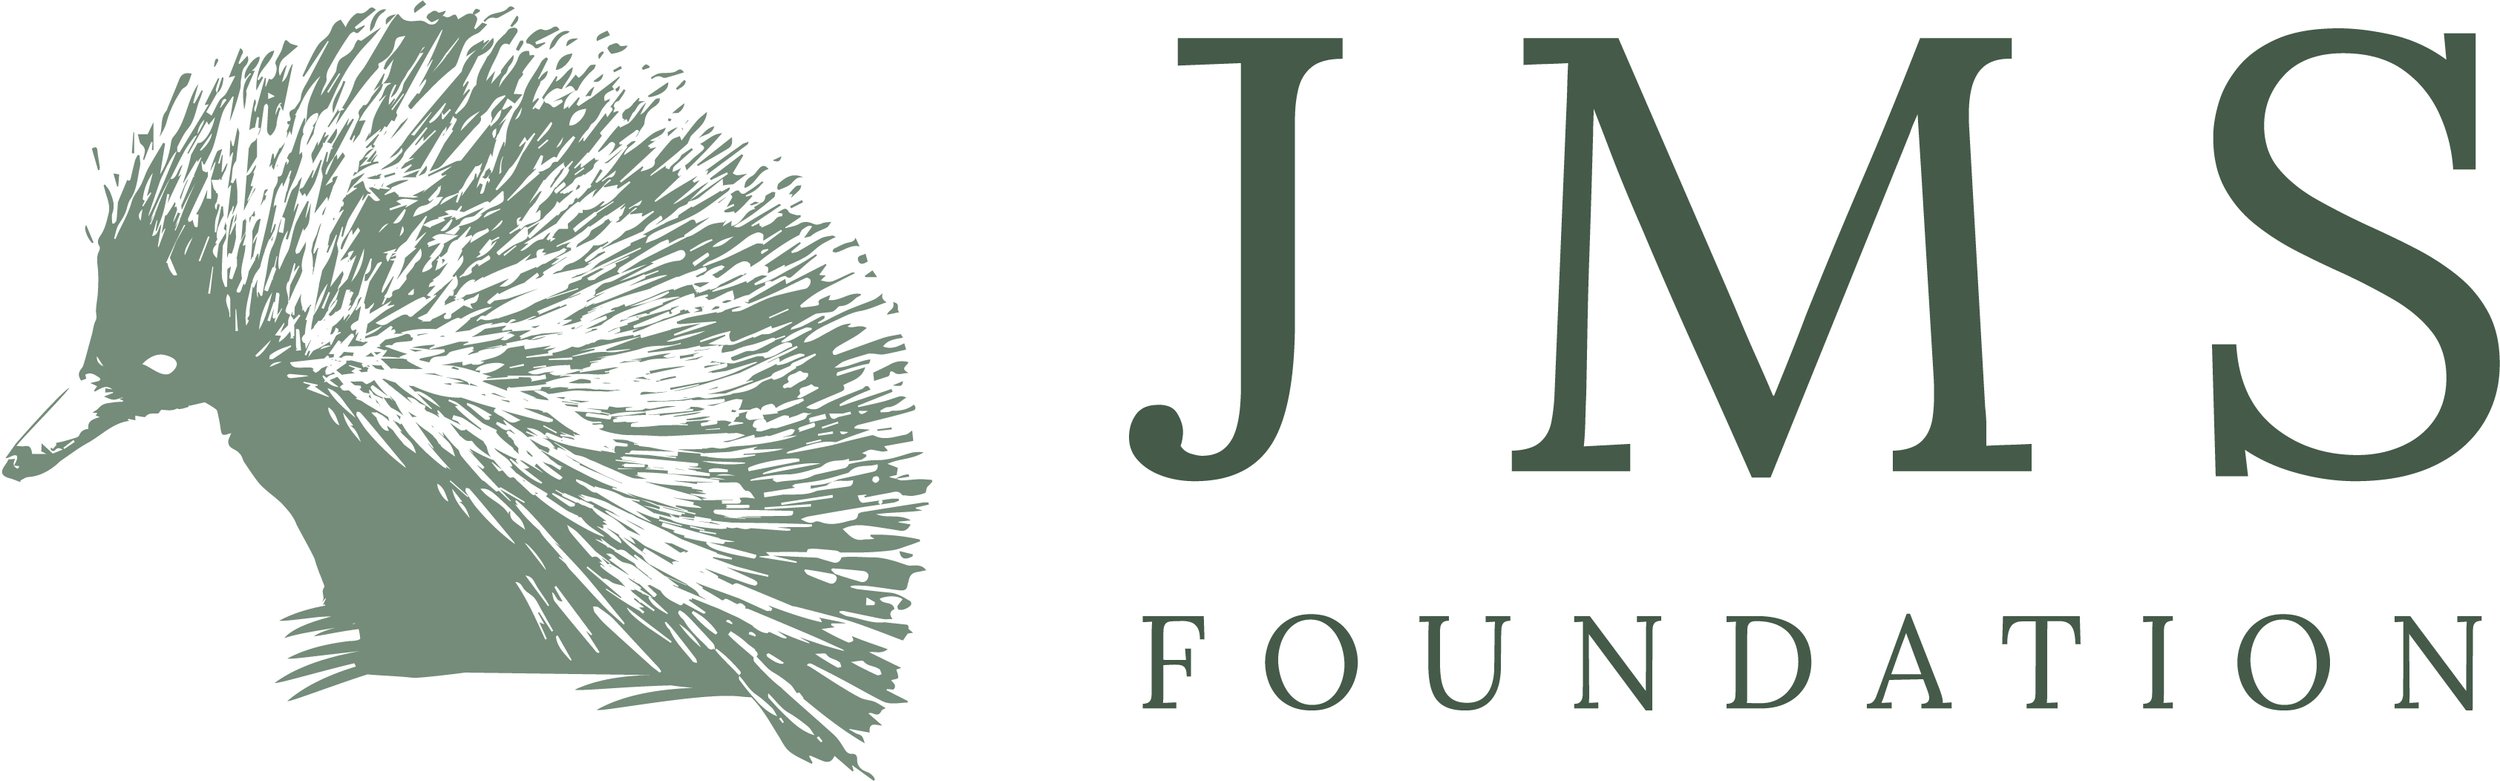 JMS Logo